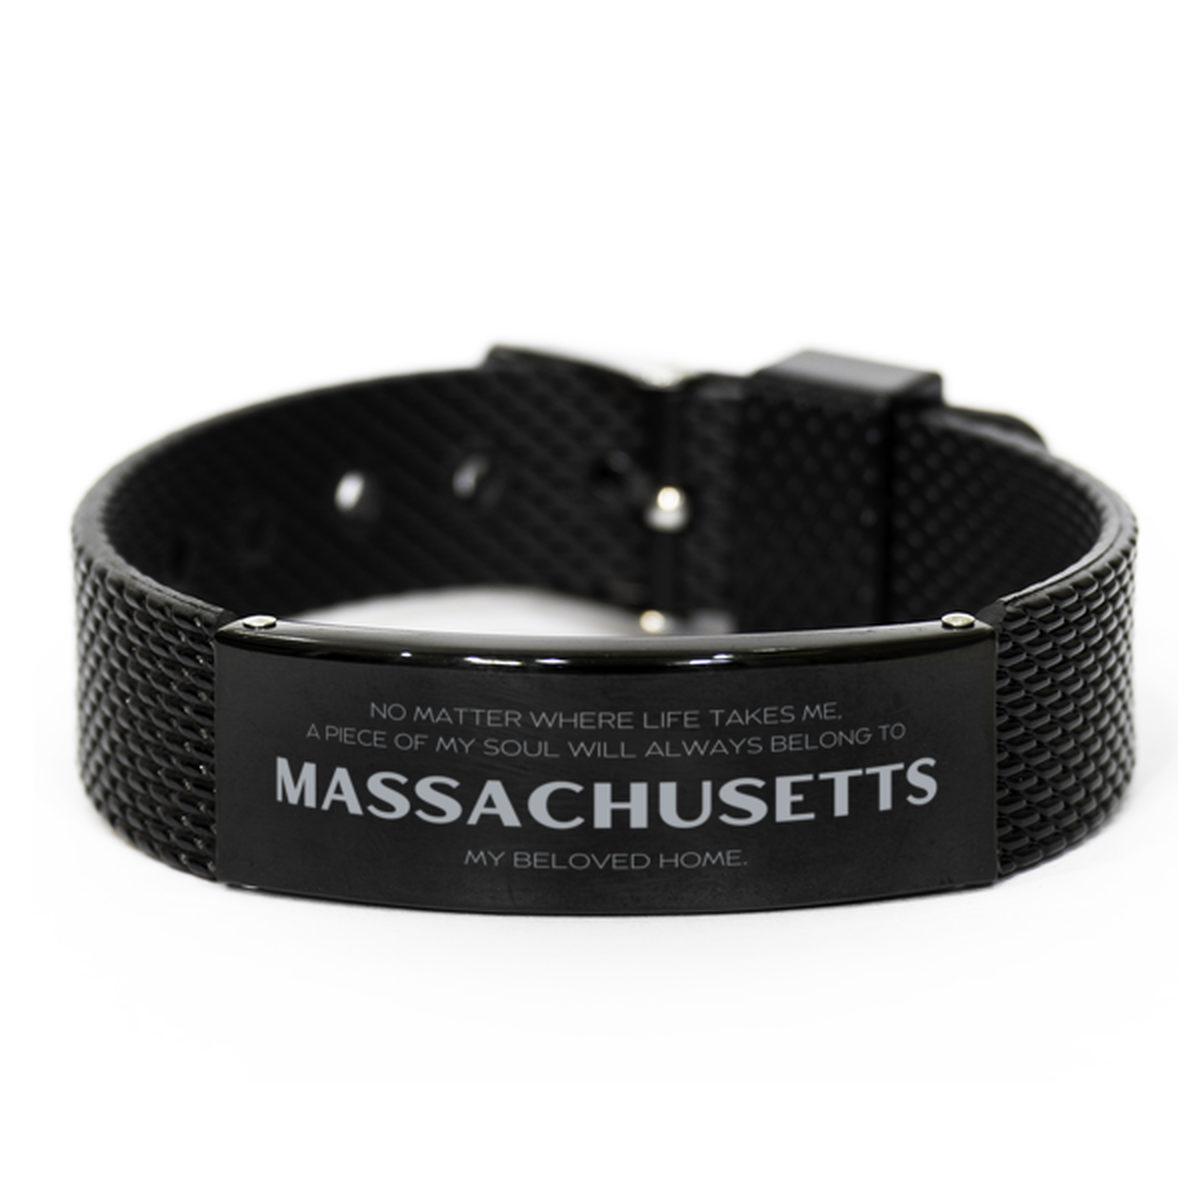 Love Massachusetts State Gifts, My soul will always belong to Massachusetts, Proud Black Shark Mesh Bracelet, Birthday Unique Gifts For Massachusetts Men, Women, Friends